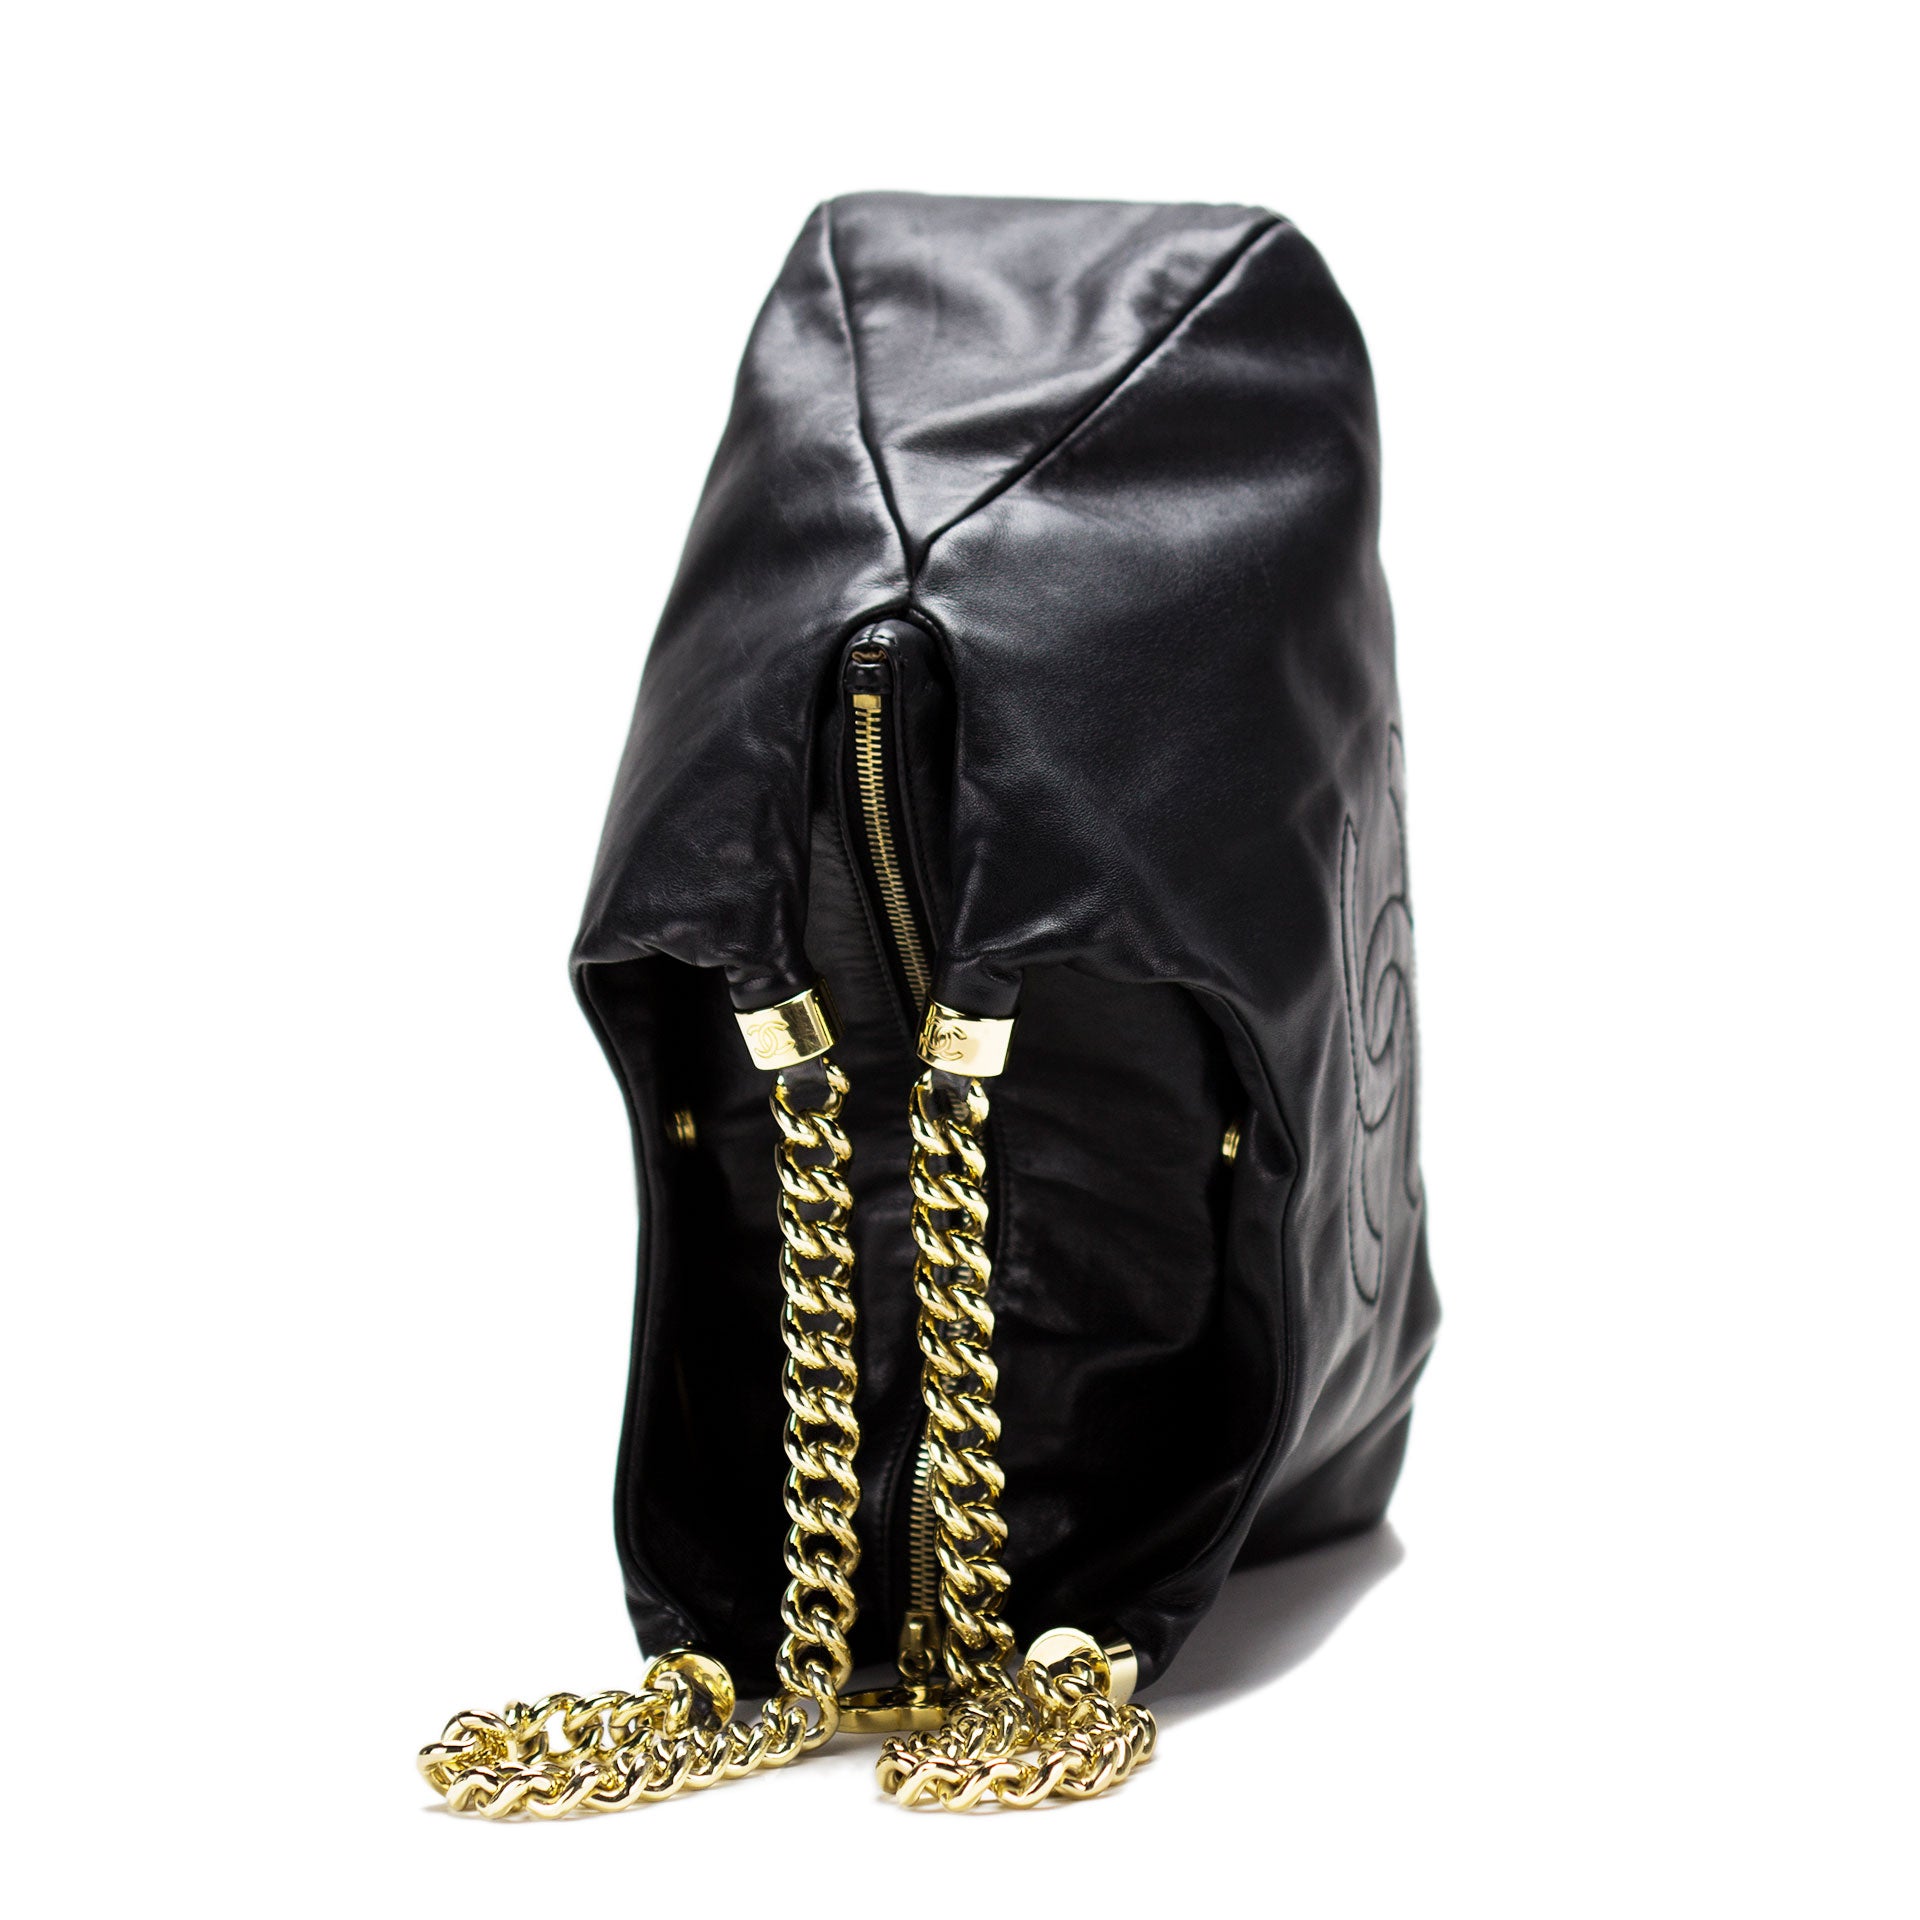 Chanel Nylon Bag - 144 For Sale on 1stDibs  chanel vintage nylon bag, chanel  nylon quilted bag, chanel nylon travel bag